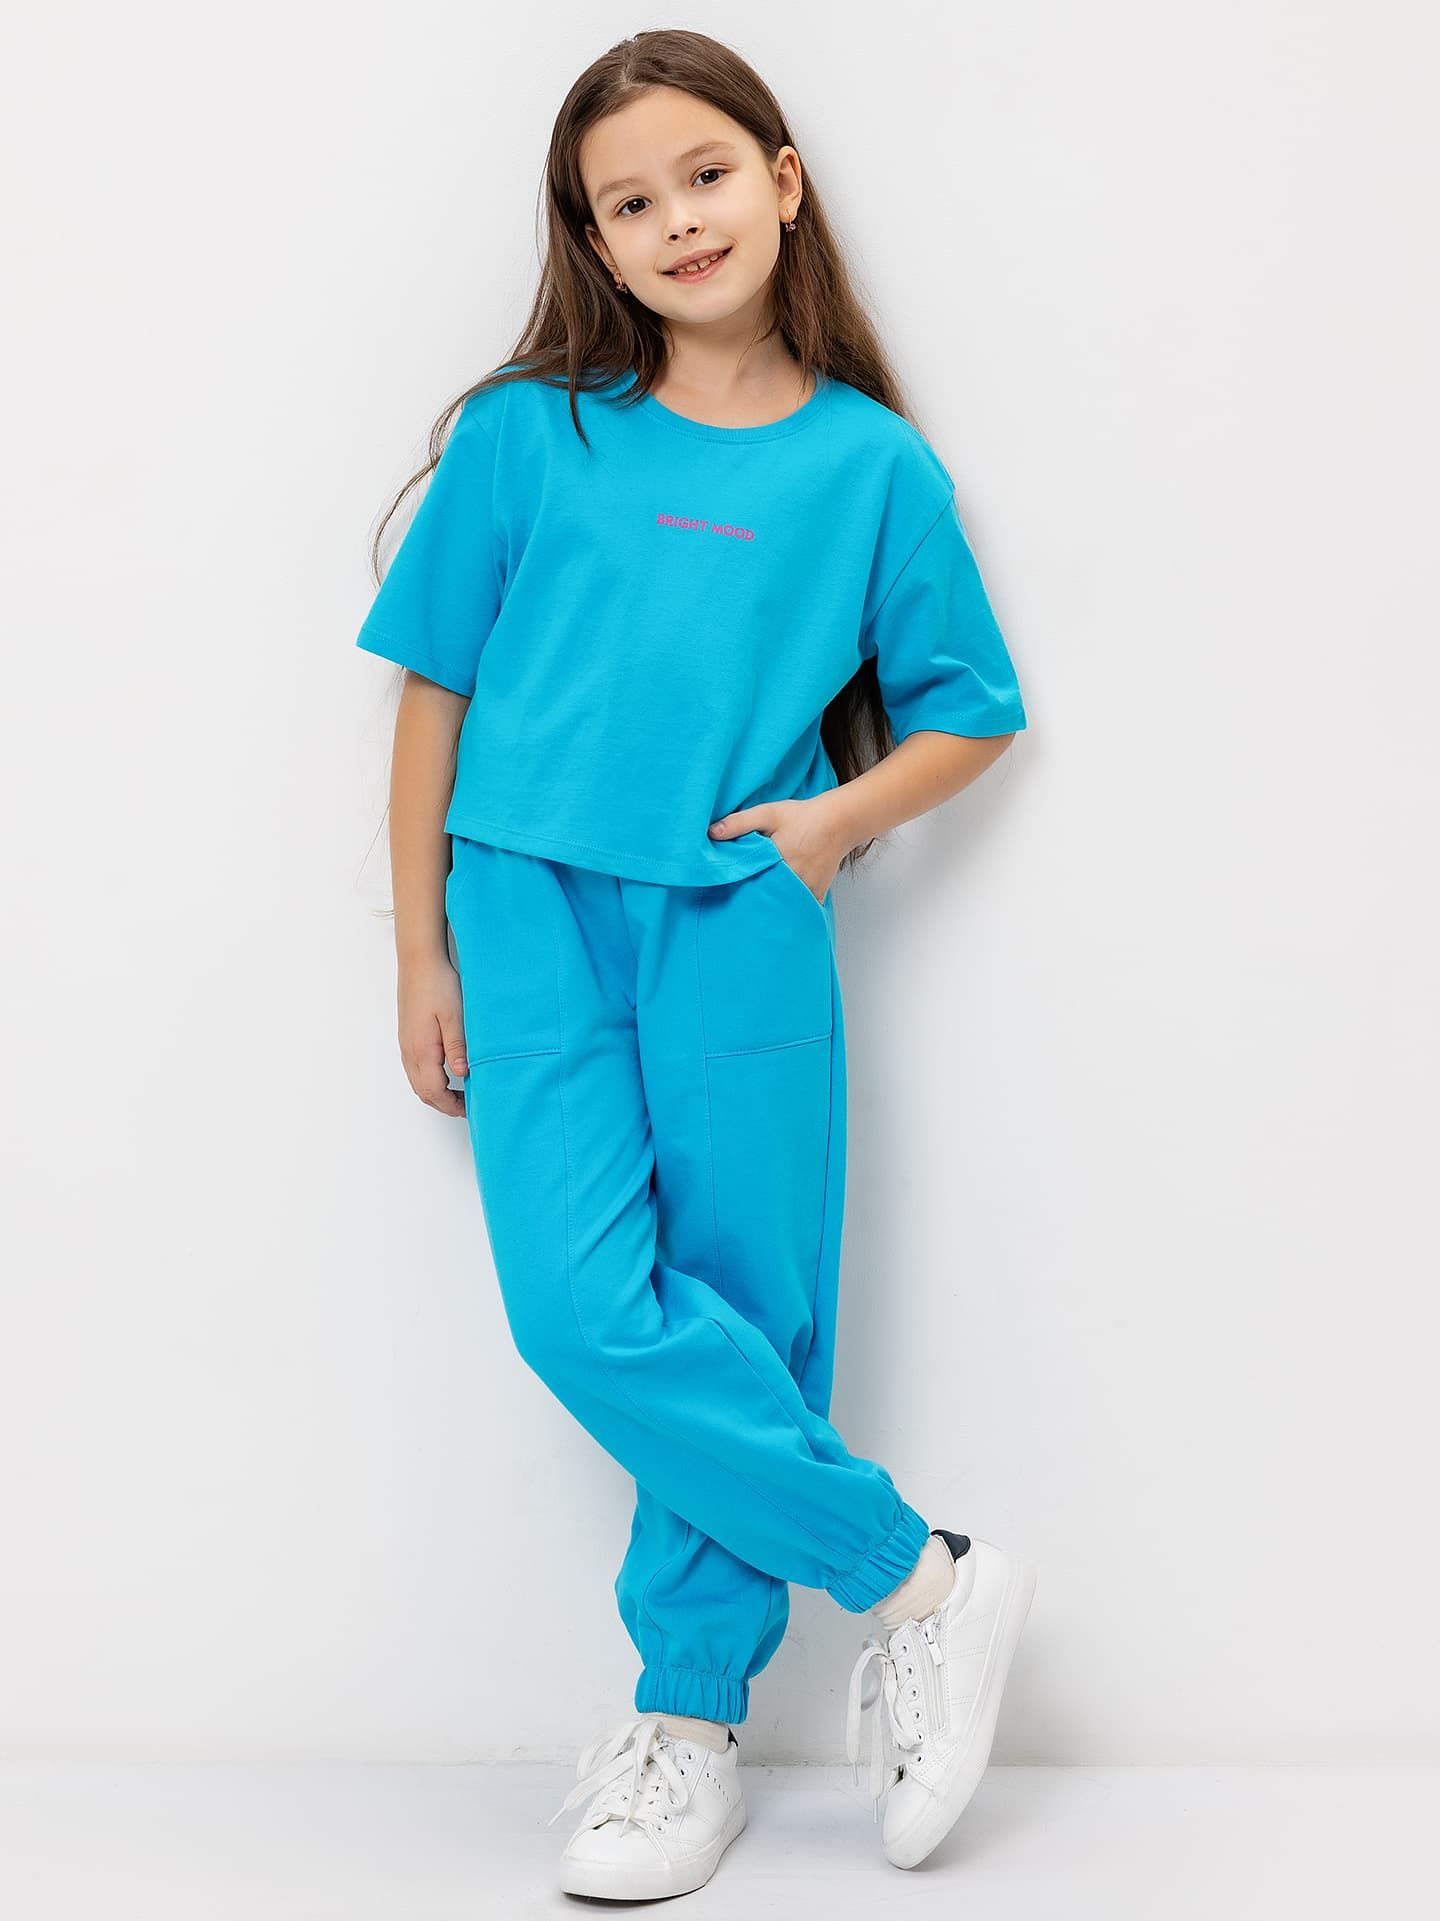 Комплект для девочки (футболка, брюки-карго) в голубом цвете с печатью